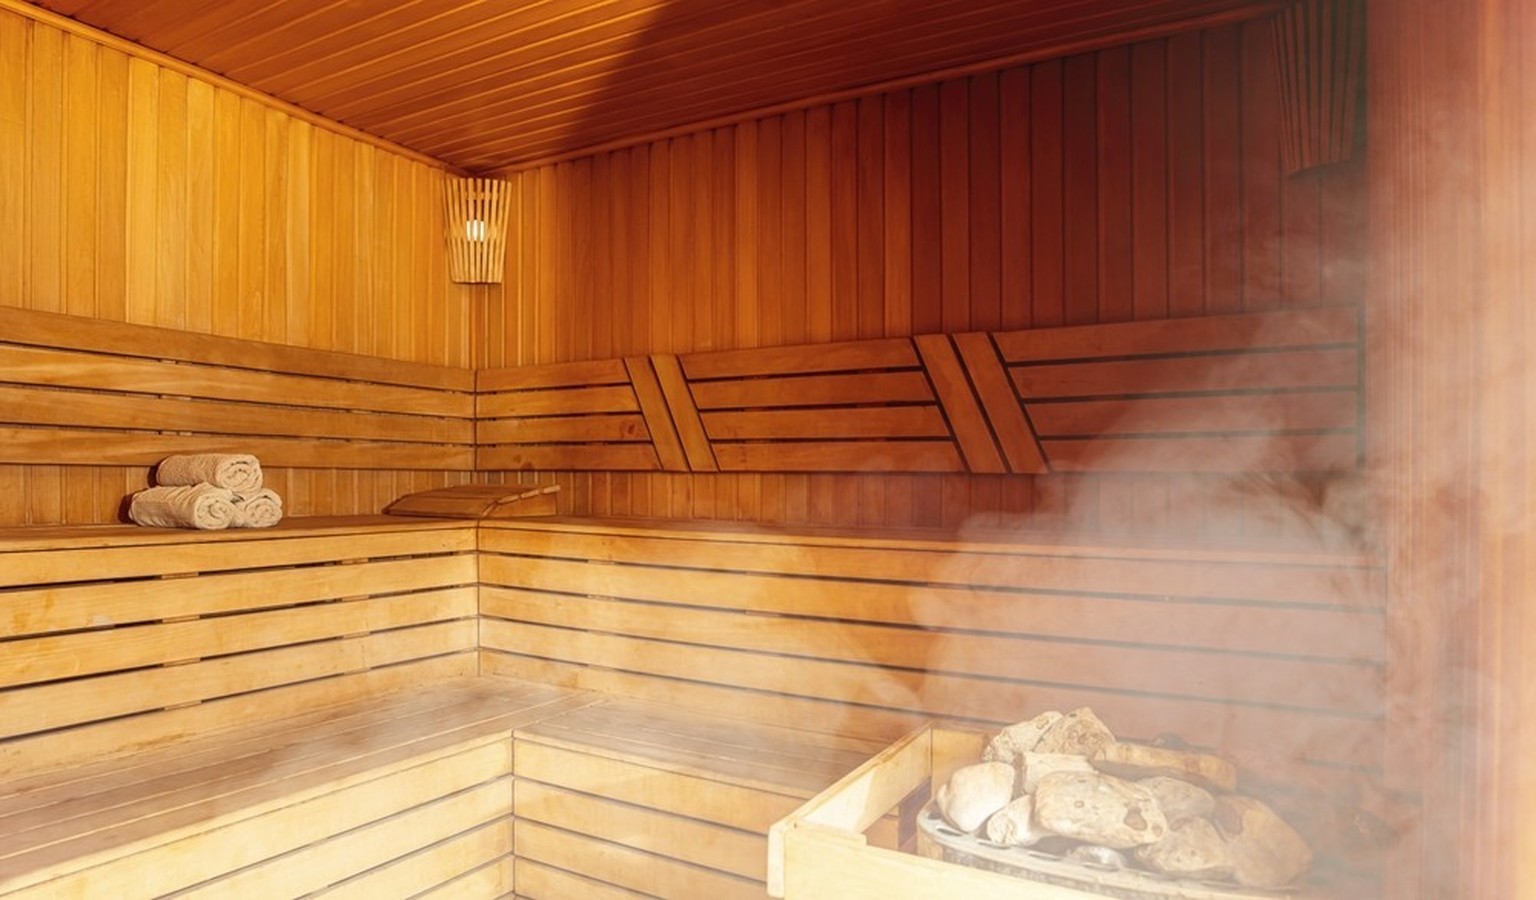 Sauna von innen, Innenbereich beim Saunieren